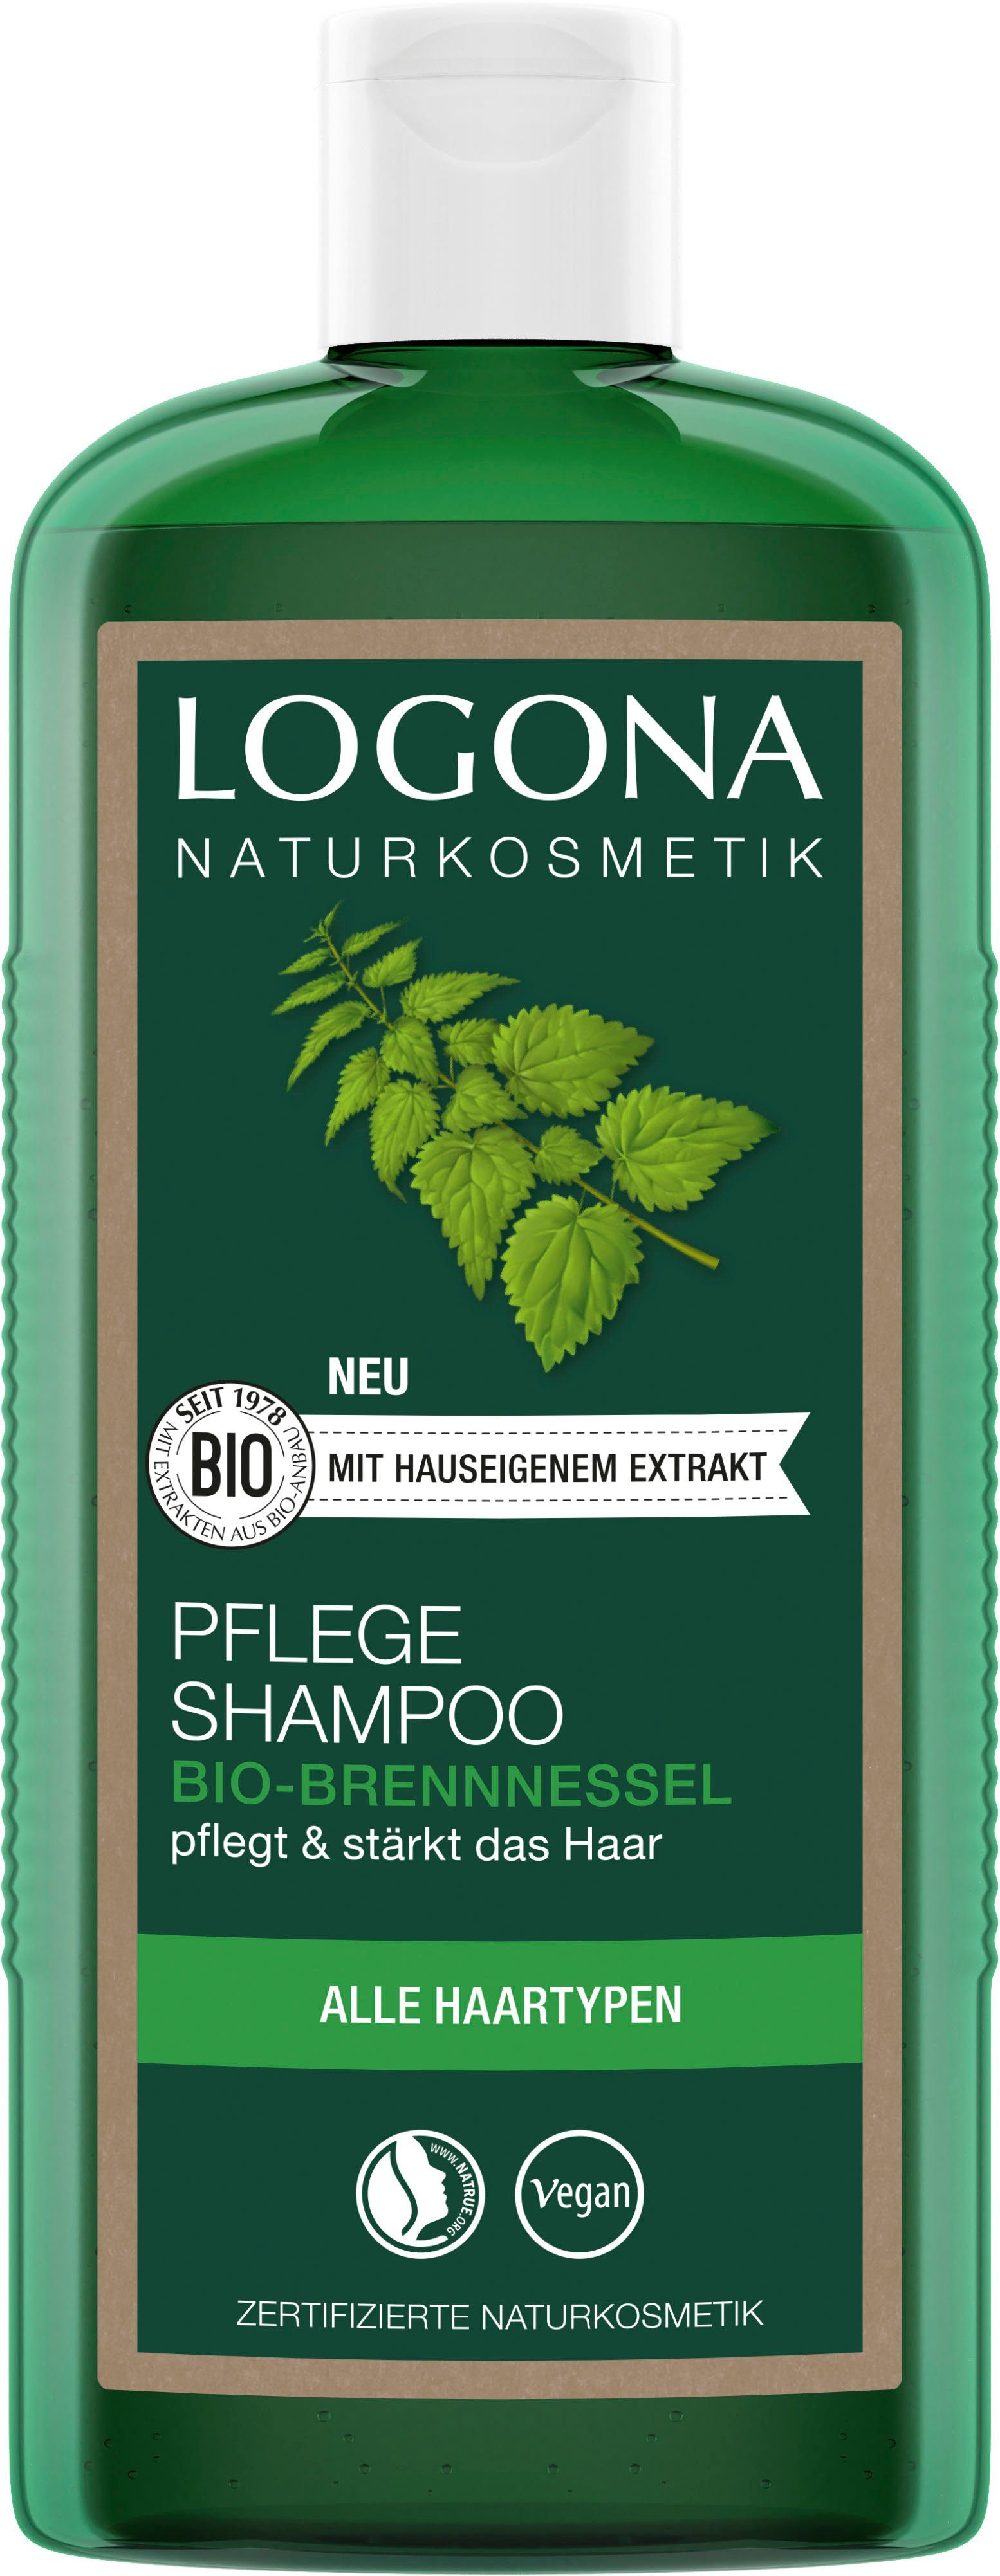 Logona Milde Reinigung die ganze Familie Haarshampoo LOGONA alle Pflege Haartypen und Bio-Brennnessel, für Shampoo